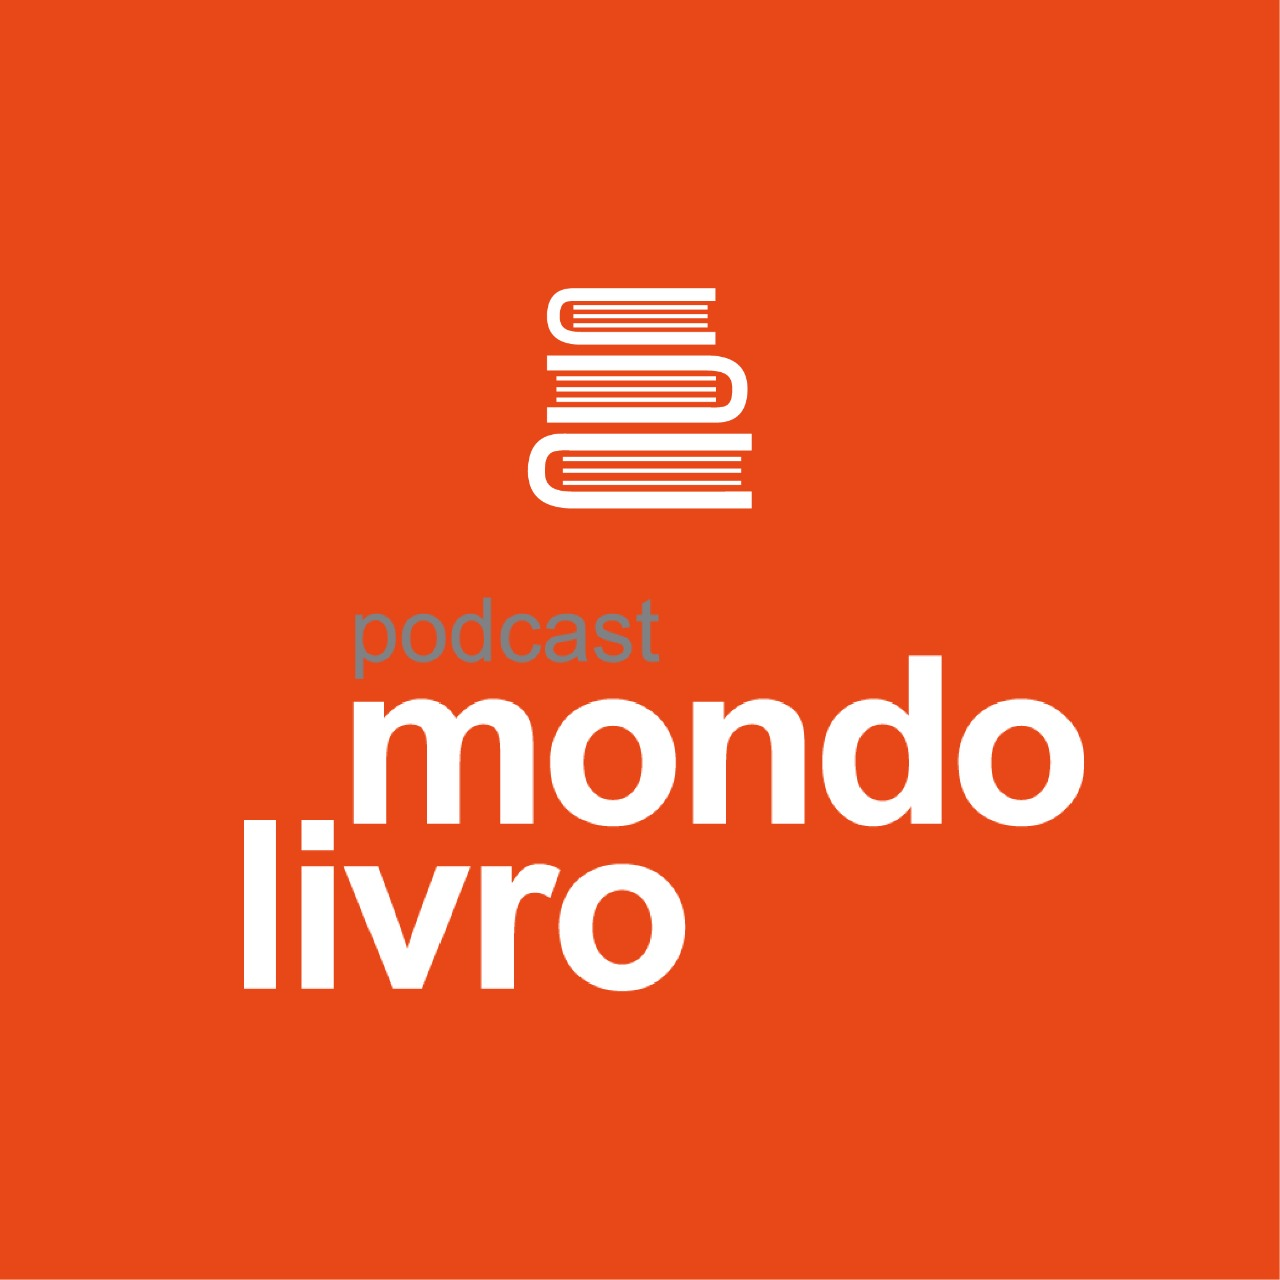 Mondolivro - “Enquanto anoitece”, romance de Luiz Eduardo Soares